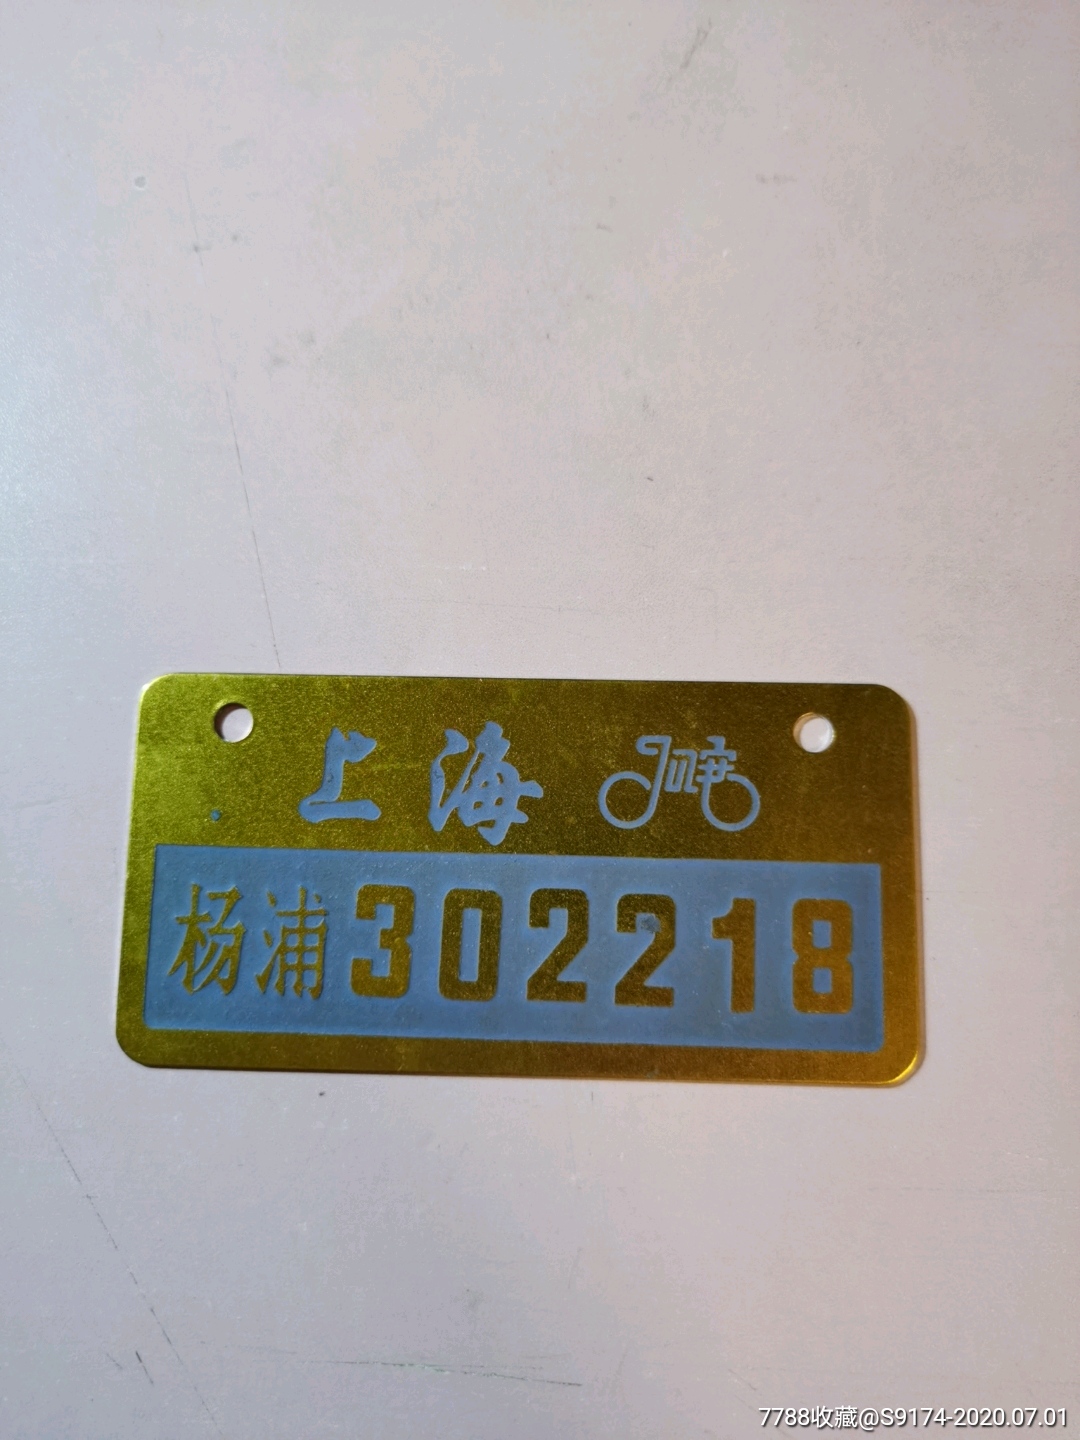 已作废上海市杨浦区自行车牌照一块